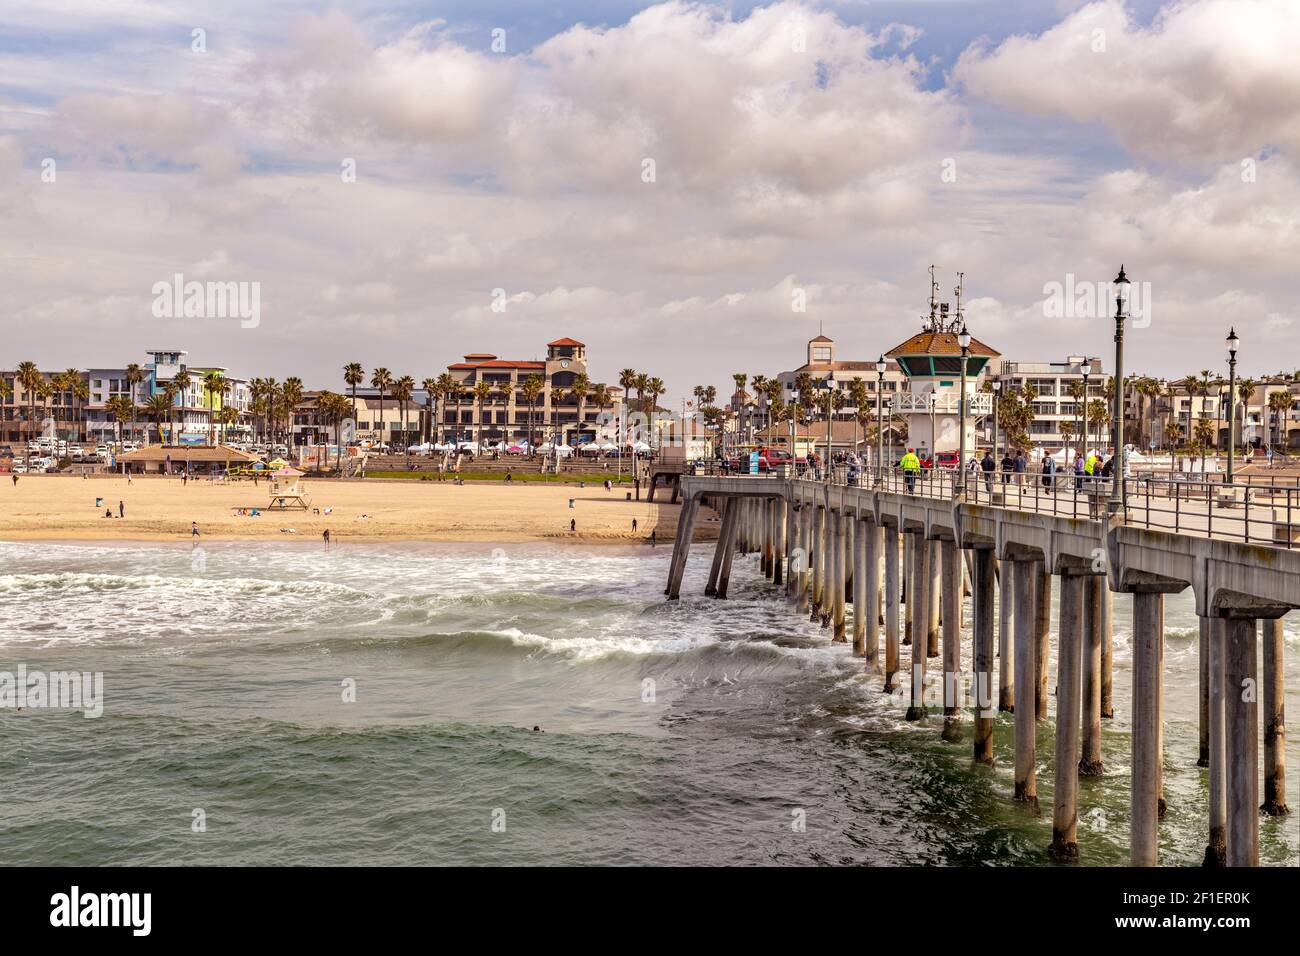 La jetée et le rivage de Huntington Beach montrent pourquoi cette région est une attraction touristique populaire, avec son ciel vibrant et son commerce animé. Banque D'Images